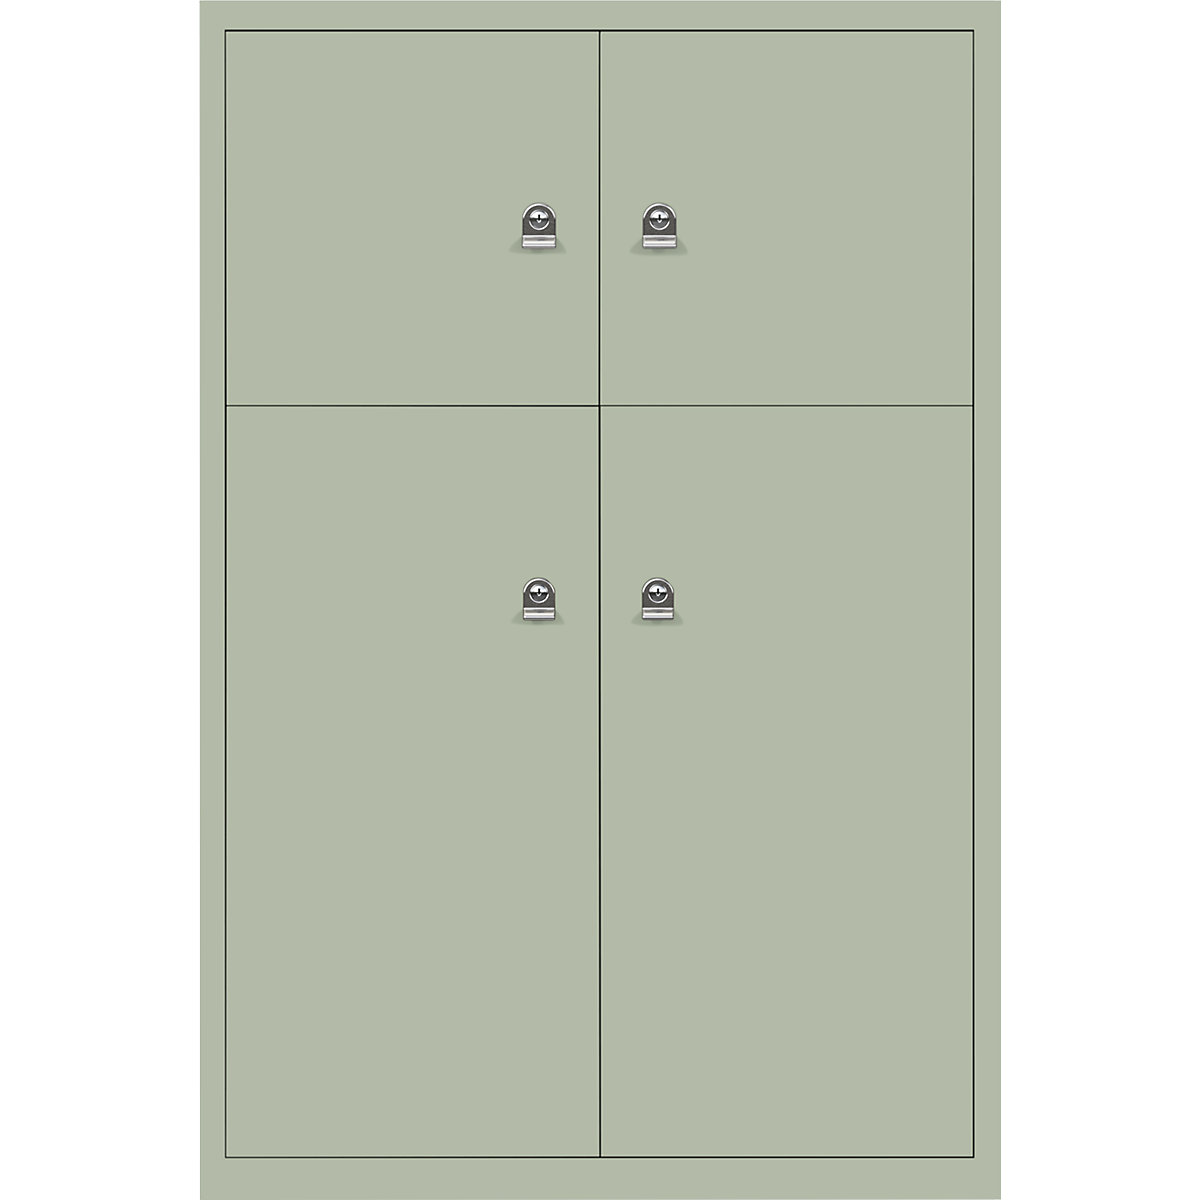 Omara s predelki z zaklepanjem LateralFile™ – BISLEY, 4 predelki z zaklepanjem, višina 2 x 375 mm, 2 x 755 mm, sivo zelene barve-6